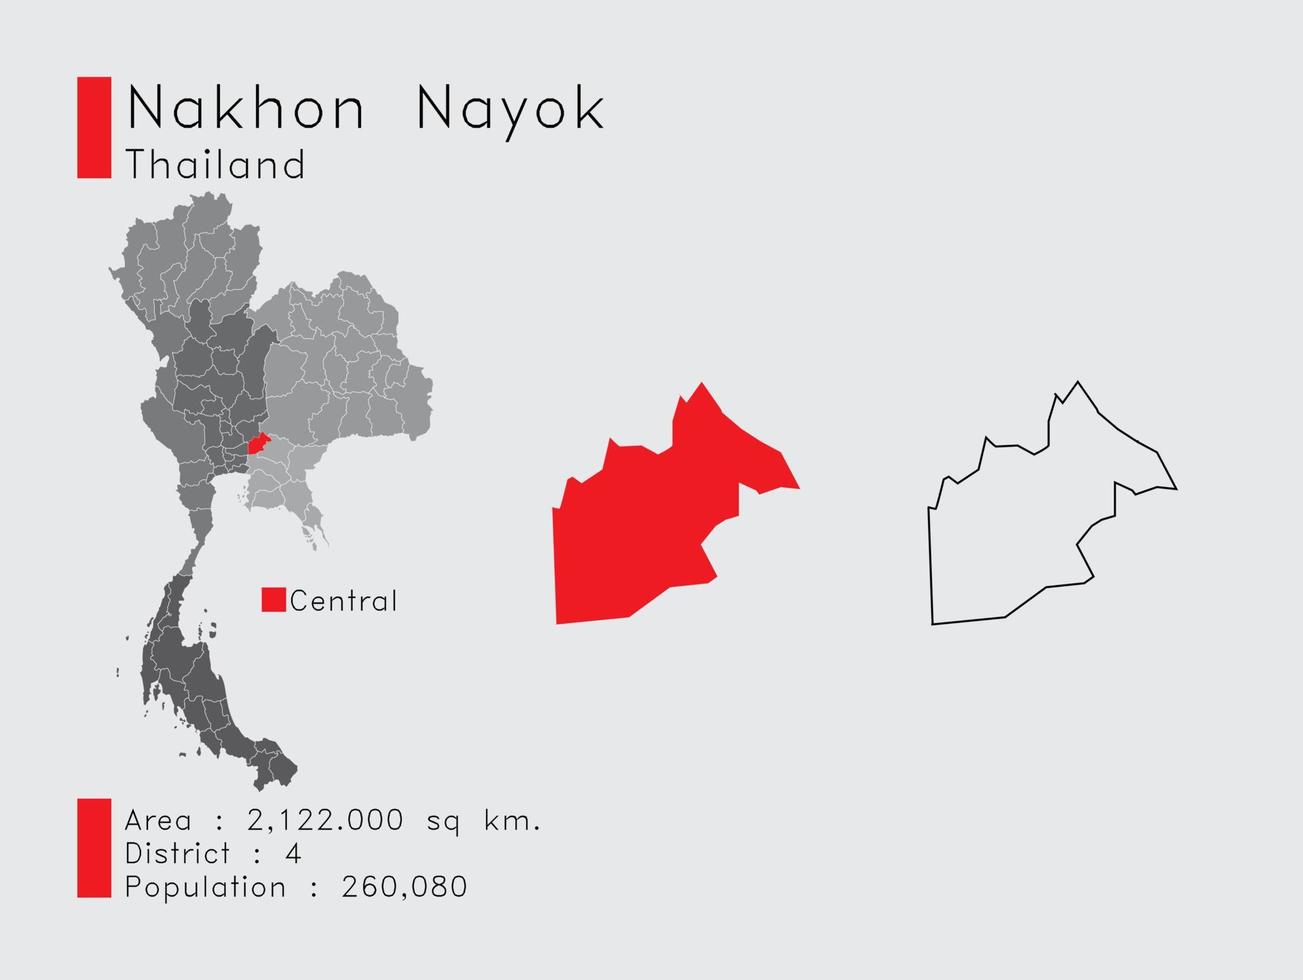 nakhon nayok position in thailand eine reihe von infografikelementen für die provinz. und Bereich Bezirk Bevölkerung und Gliederung. Vektor mit grauem Hintergrund.